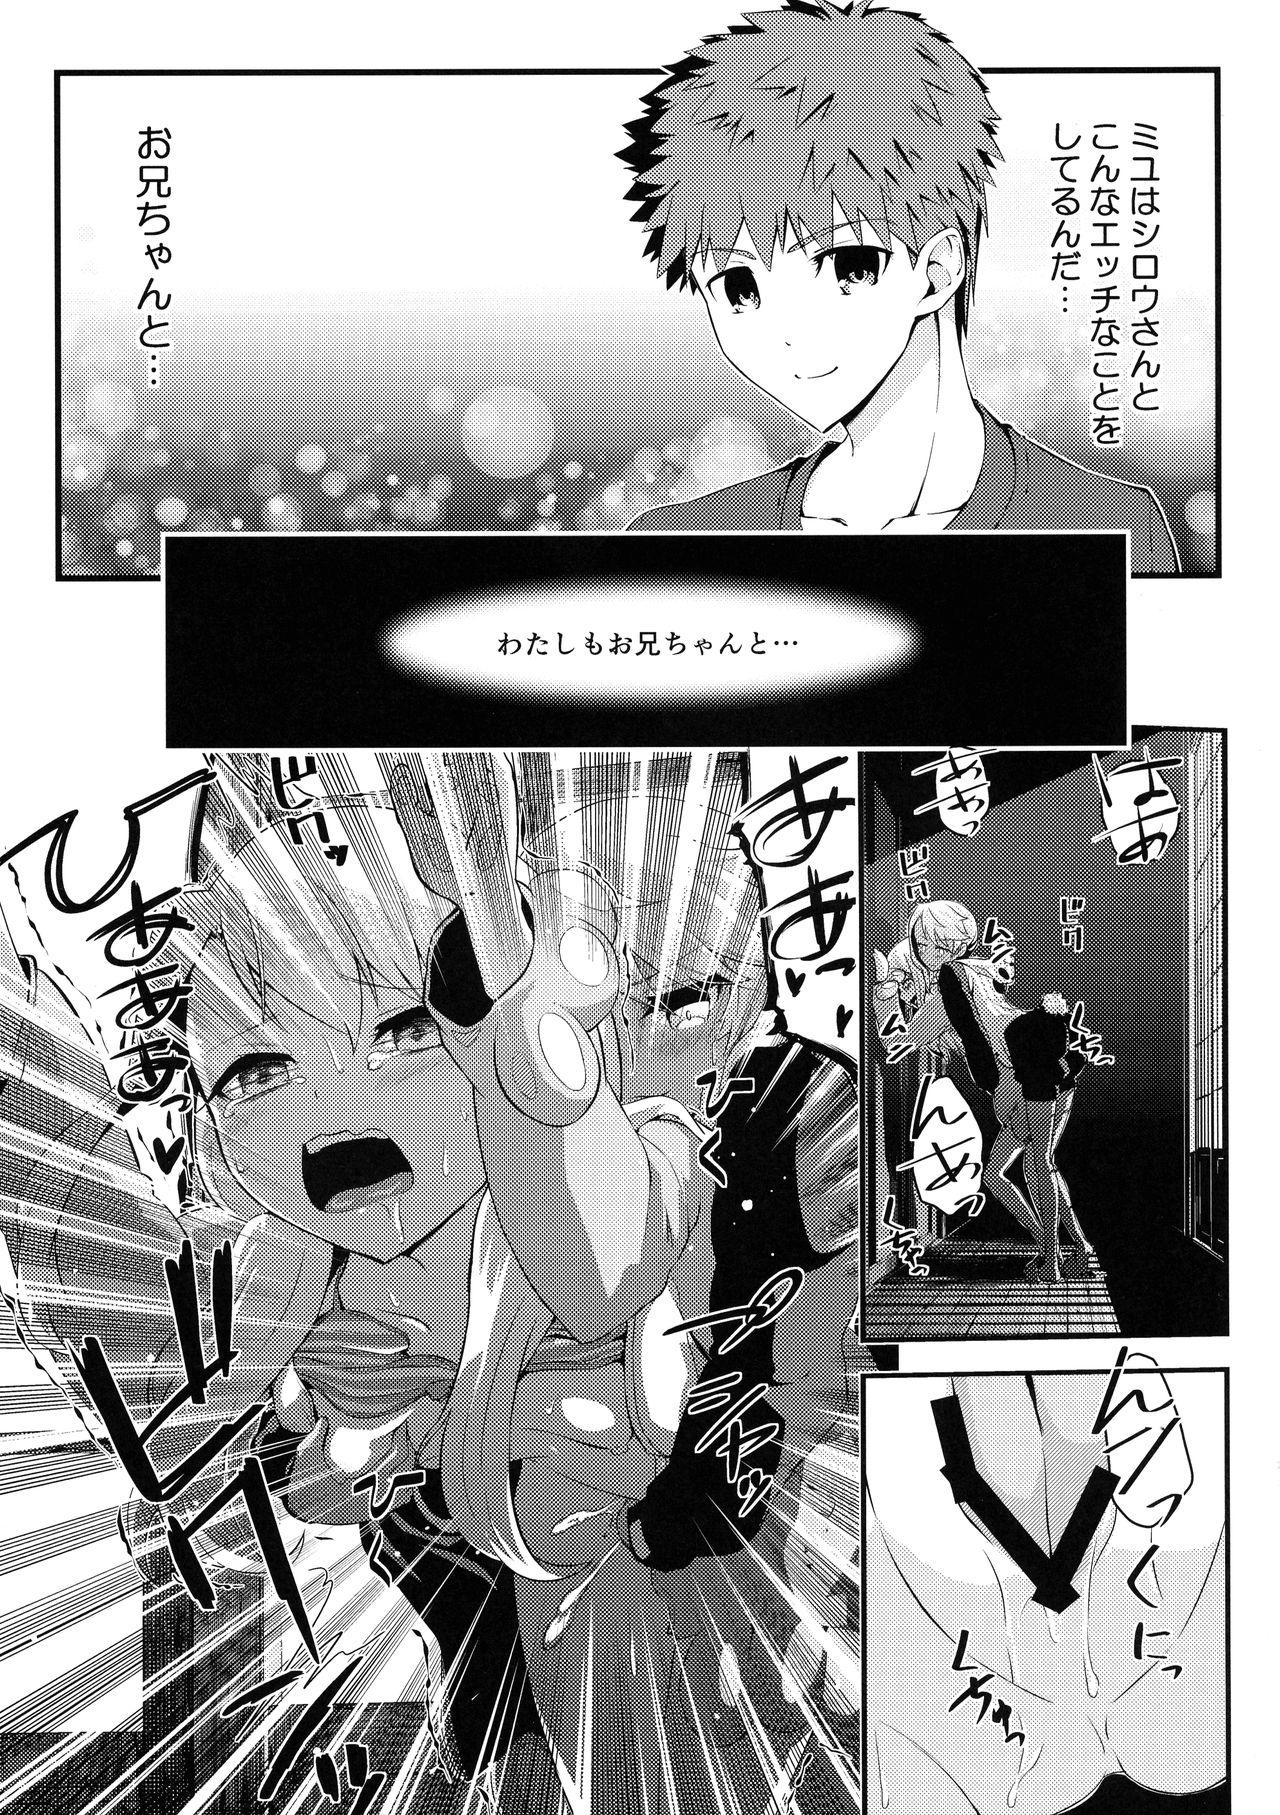 Her Heikou Sekai to, Onaji Shirou. - Fate kaleid liner prisma illya Hung - Page 7